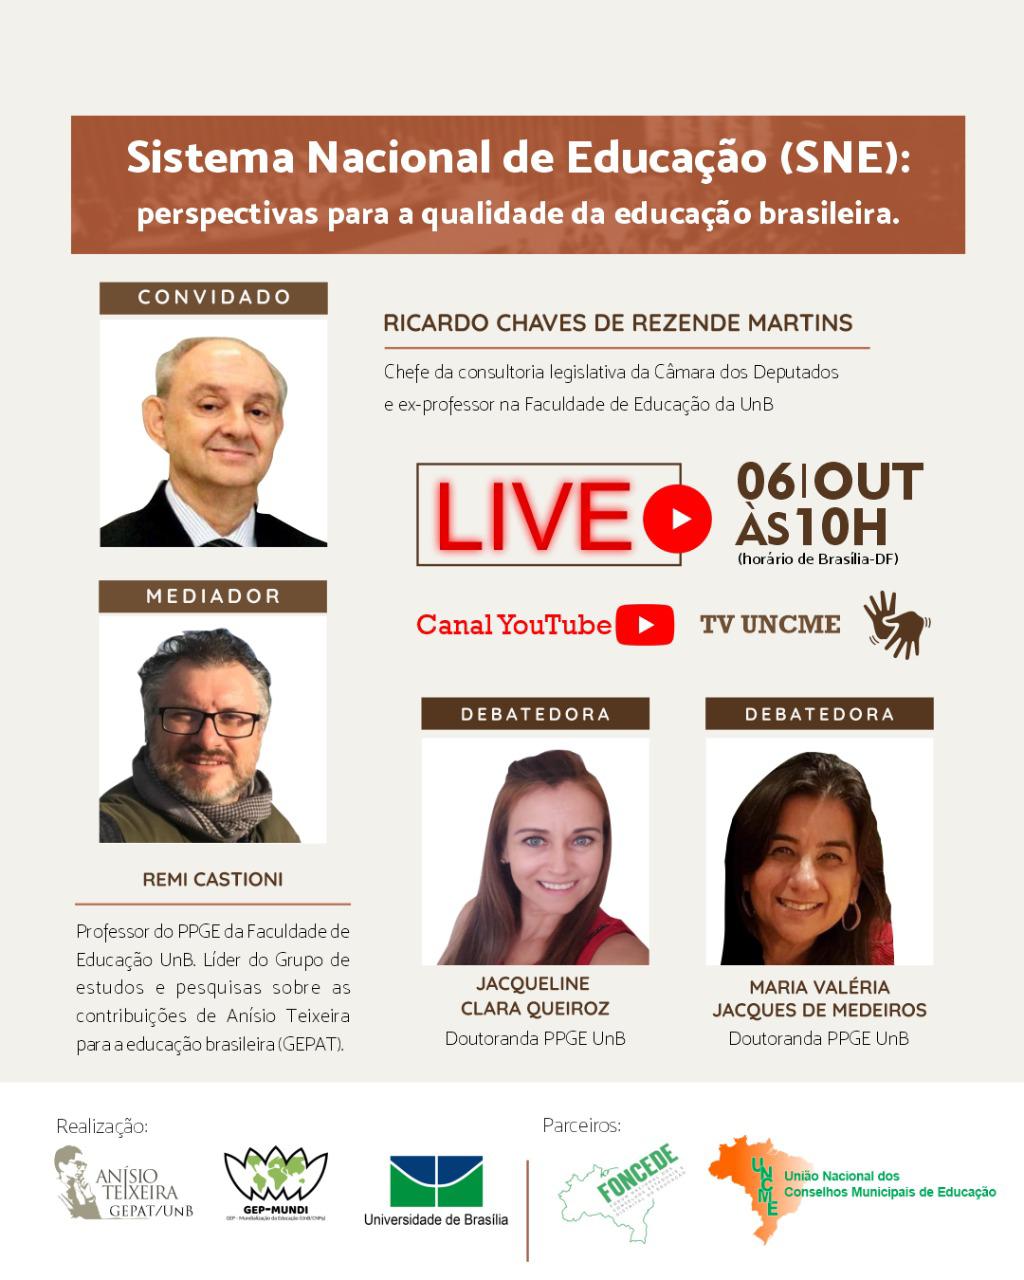 Sistema Nacional de Educação-SNE e as perspectivas para qualidade da educação brasileira